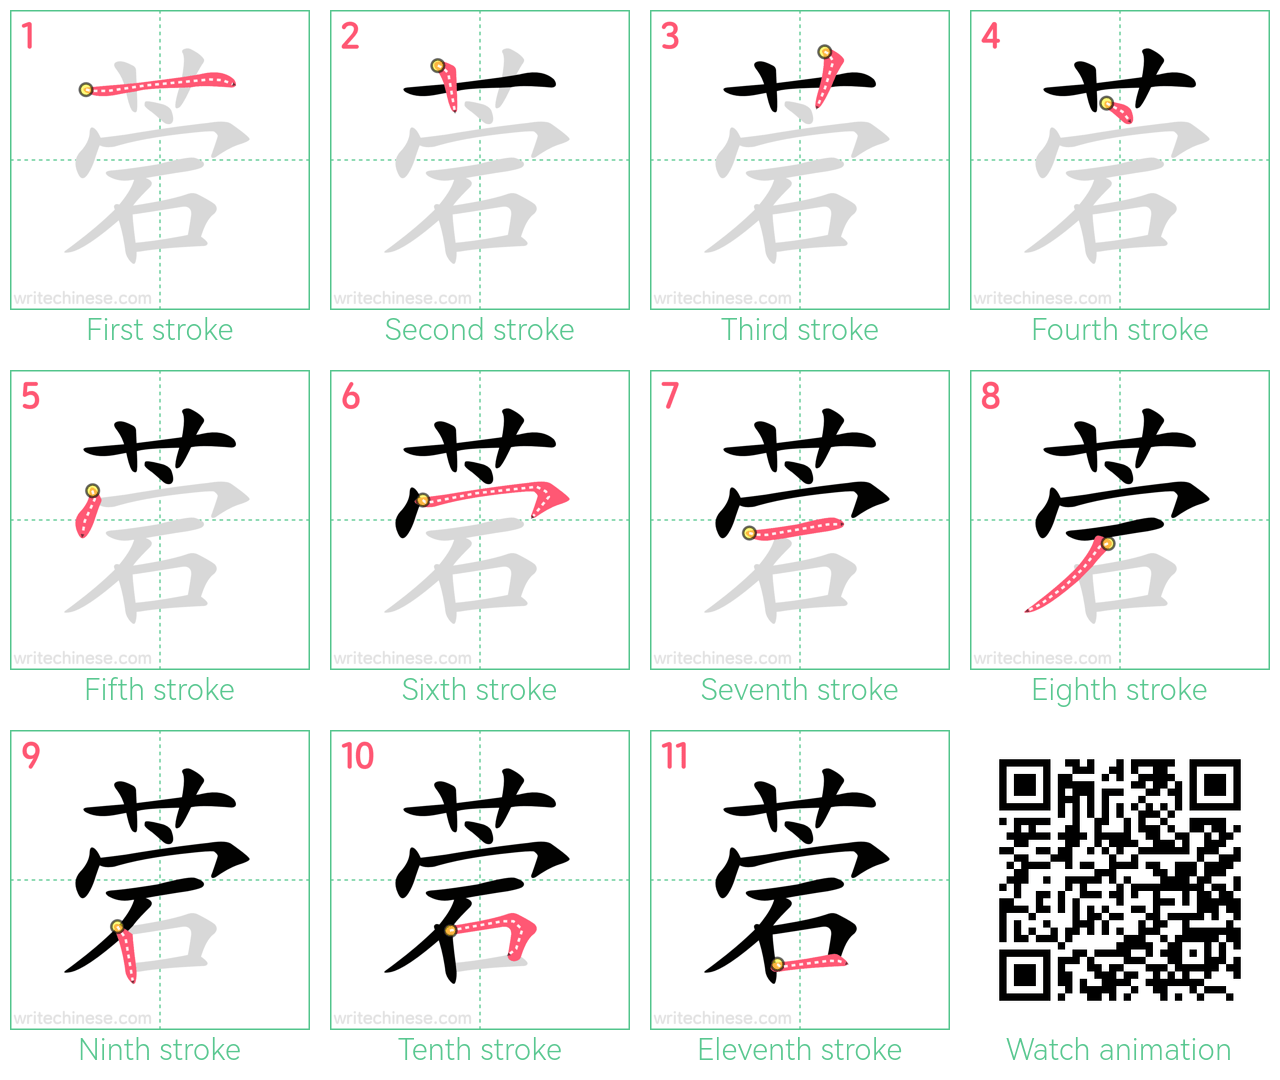 菪 step-by-step stroke order diagrams